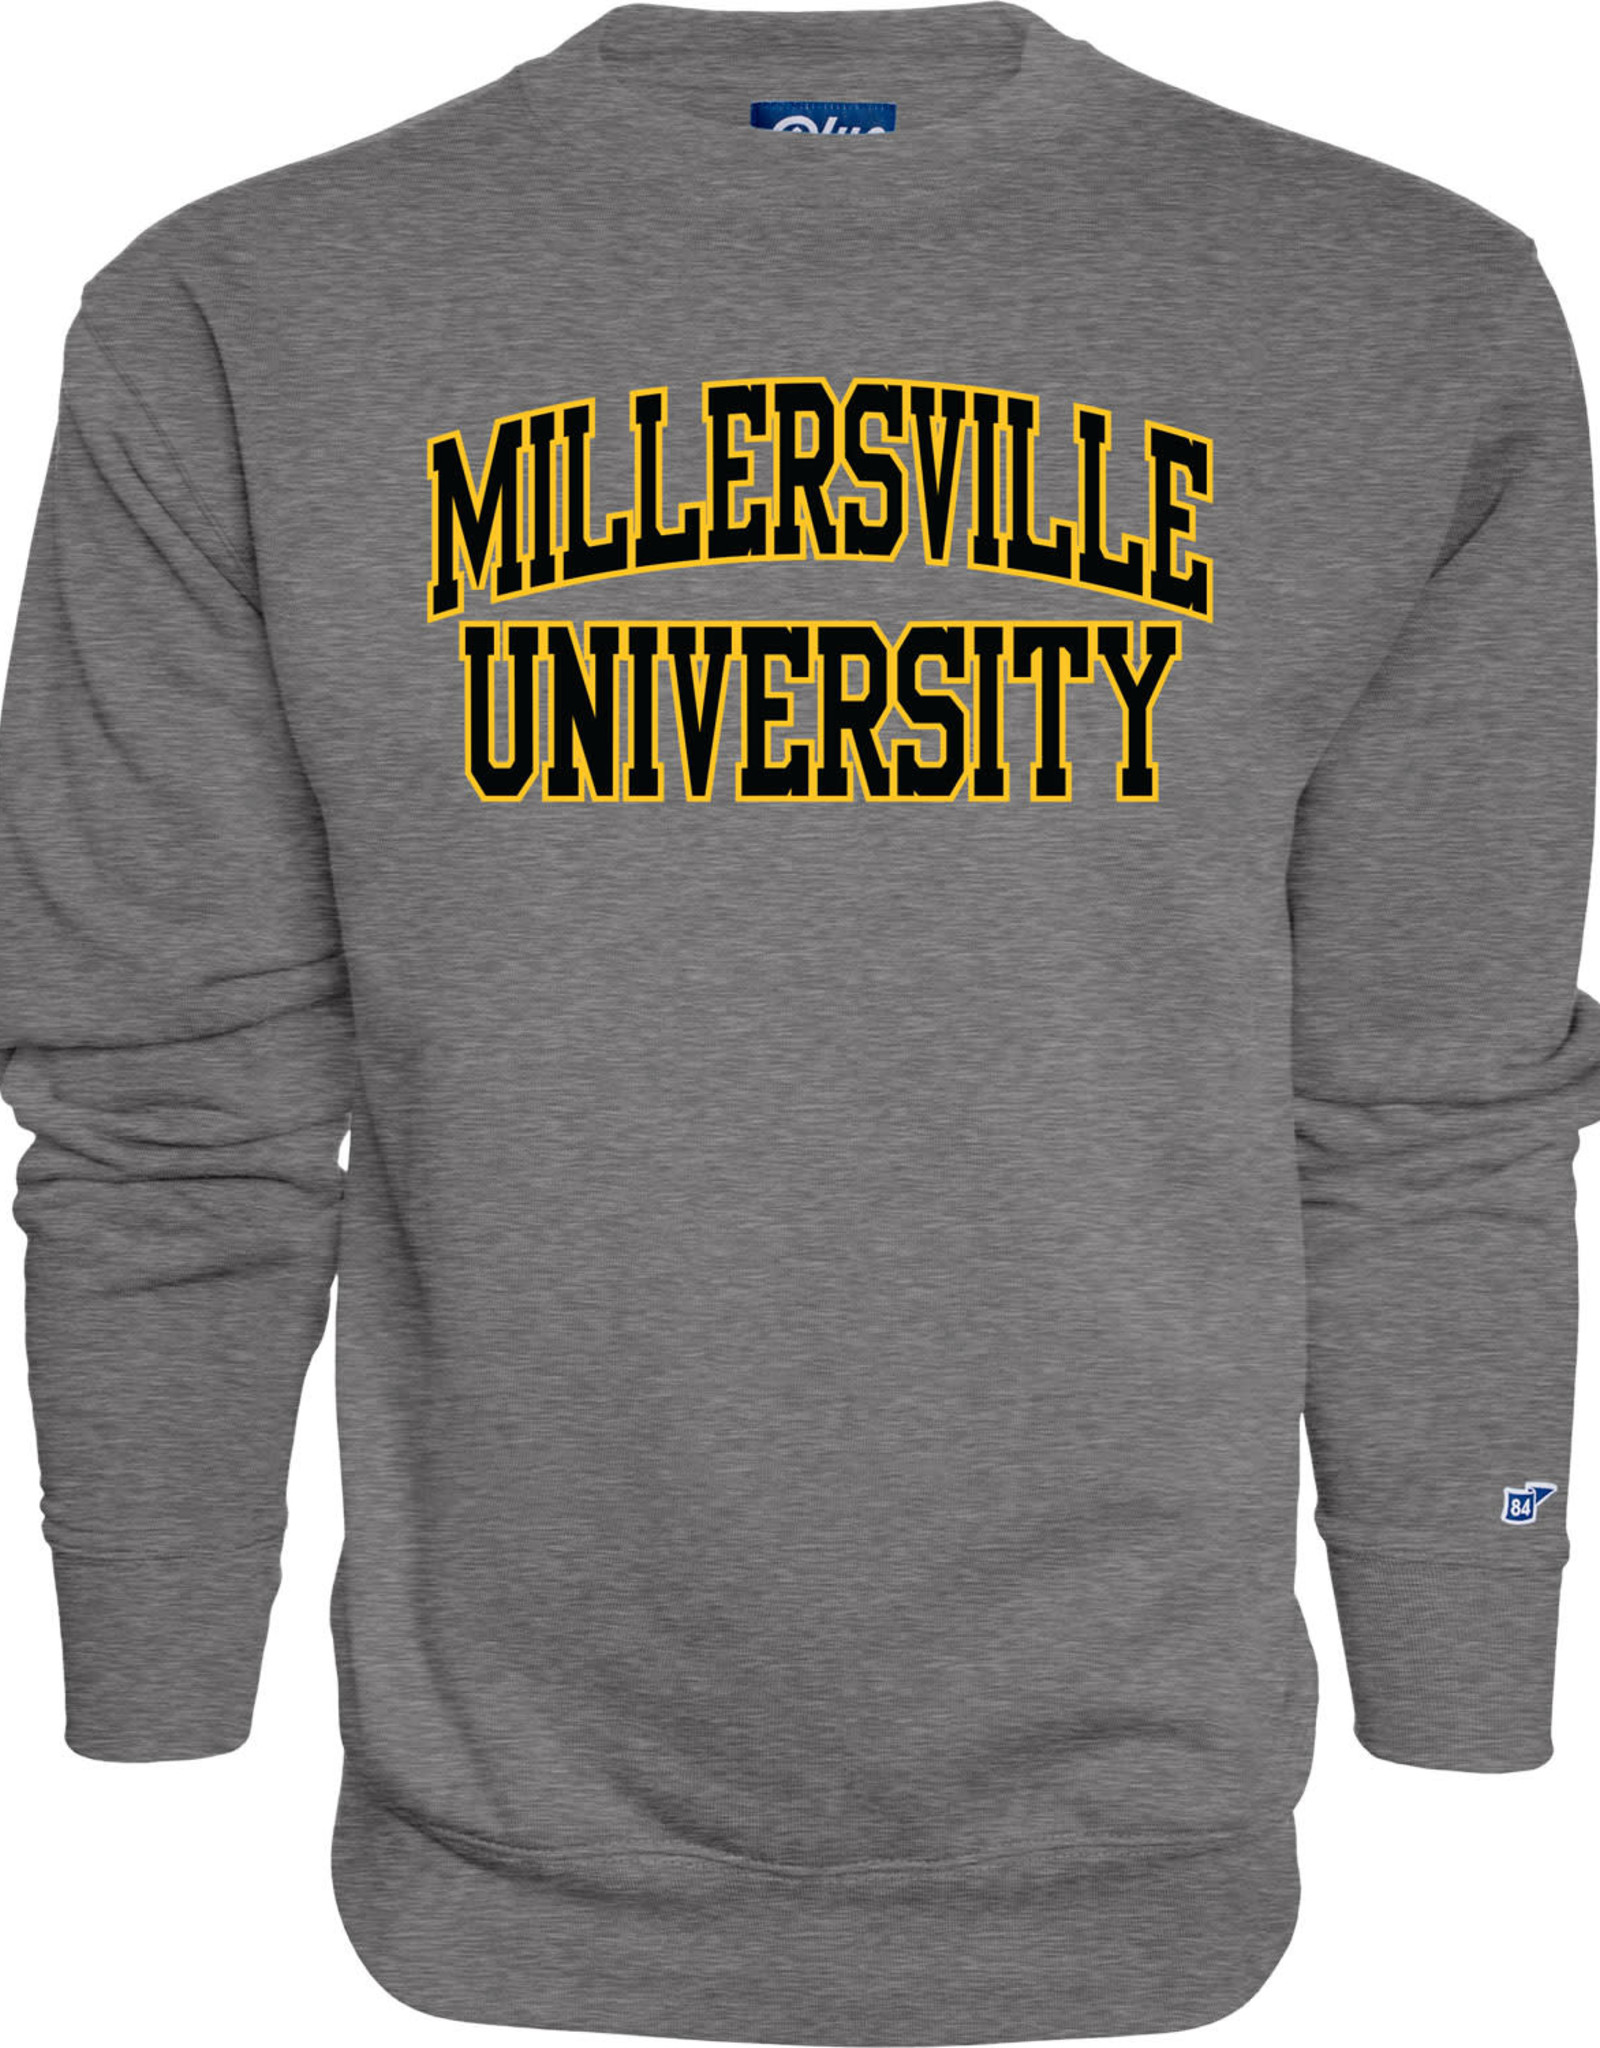 Premium Graphite Millersville University Crew with Applique